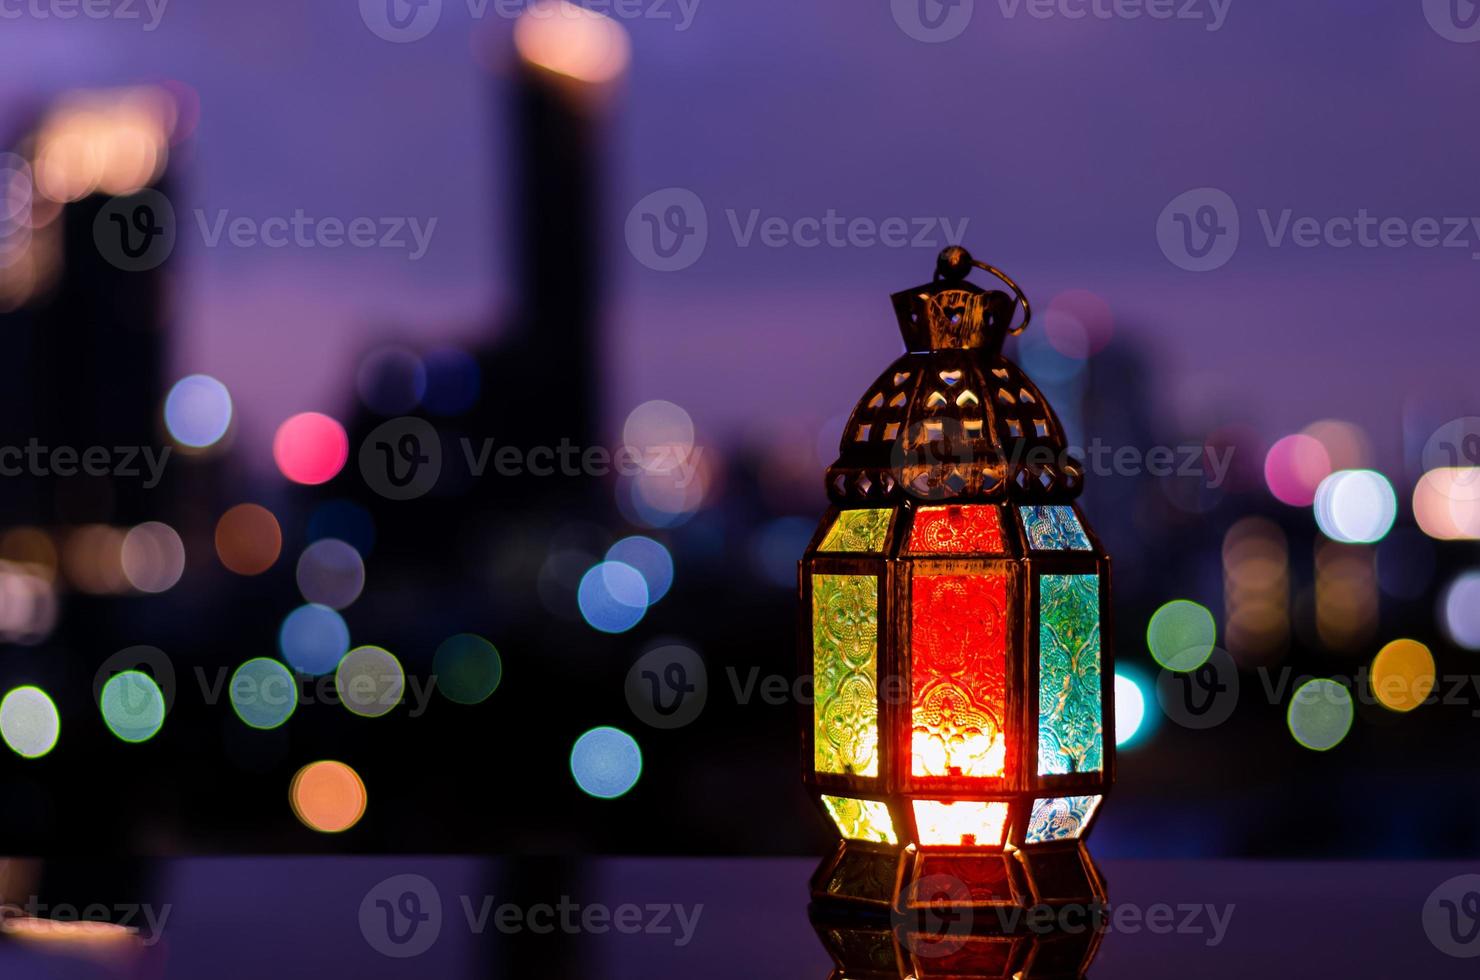 lykta med natt himmel och stad bokeh ljus bakgrund för de muslim fest av de helig månad av ramadan kareem. foto